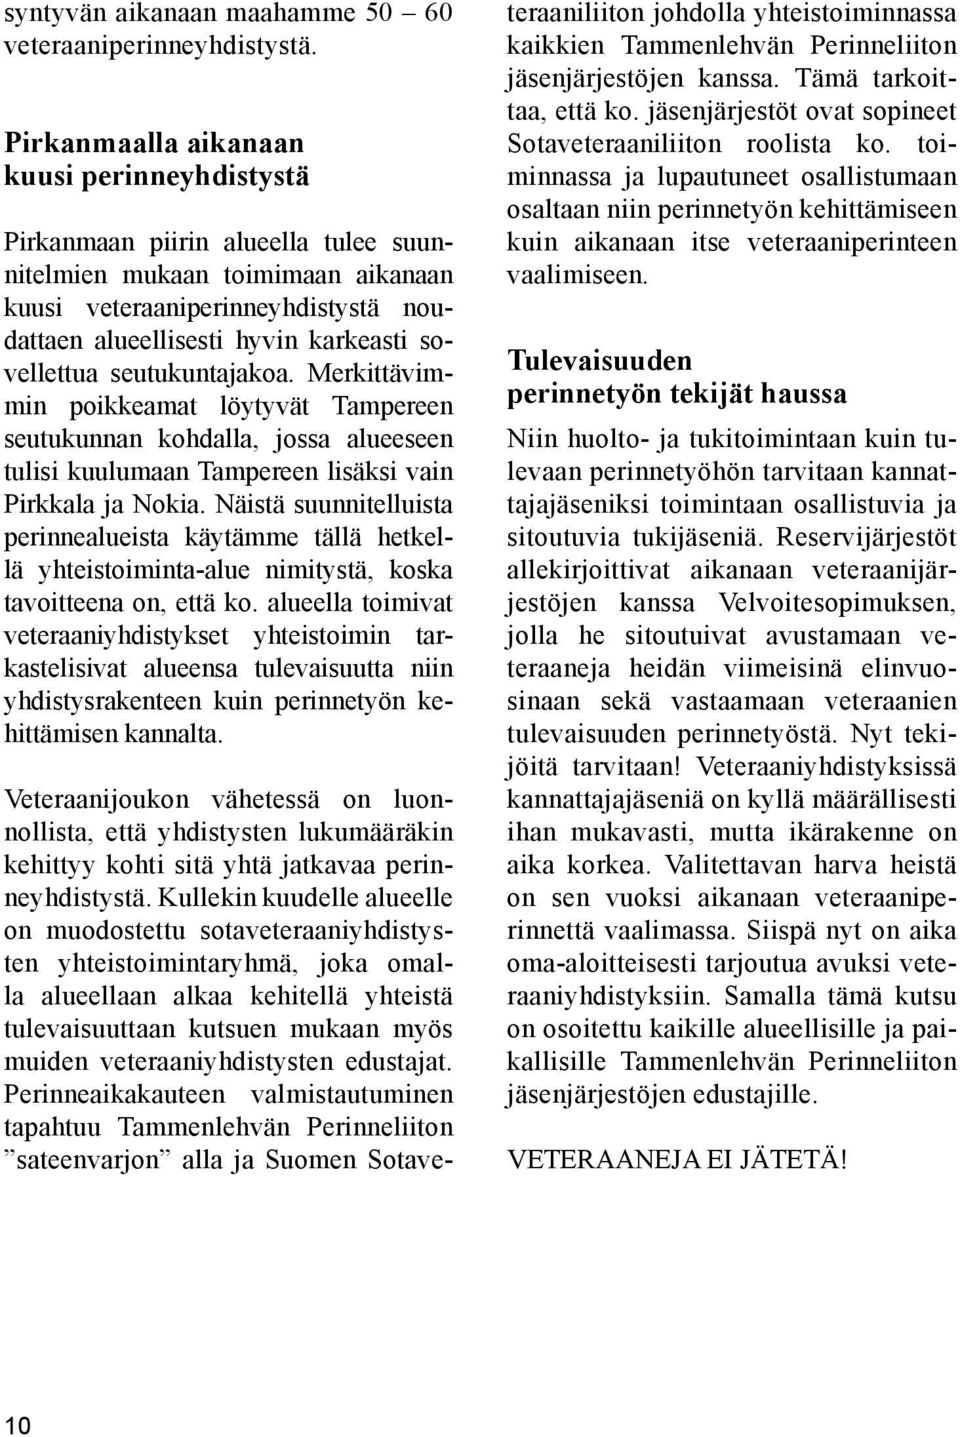 sovellettua seutukuntajakoa. Merkittävimmin poikkeamat löytyvät Tampereen seutukunnan kohdalla, jossa alueeseen tulisi kuulumaan Tampereen lisäksi vain Pirkkala ja Nokia.